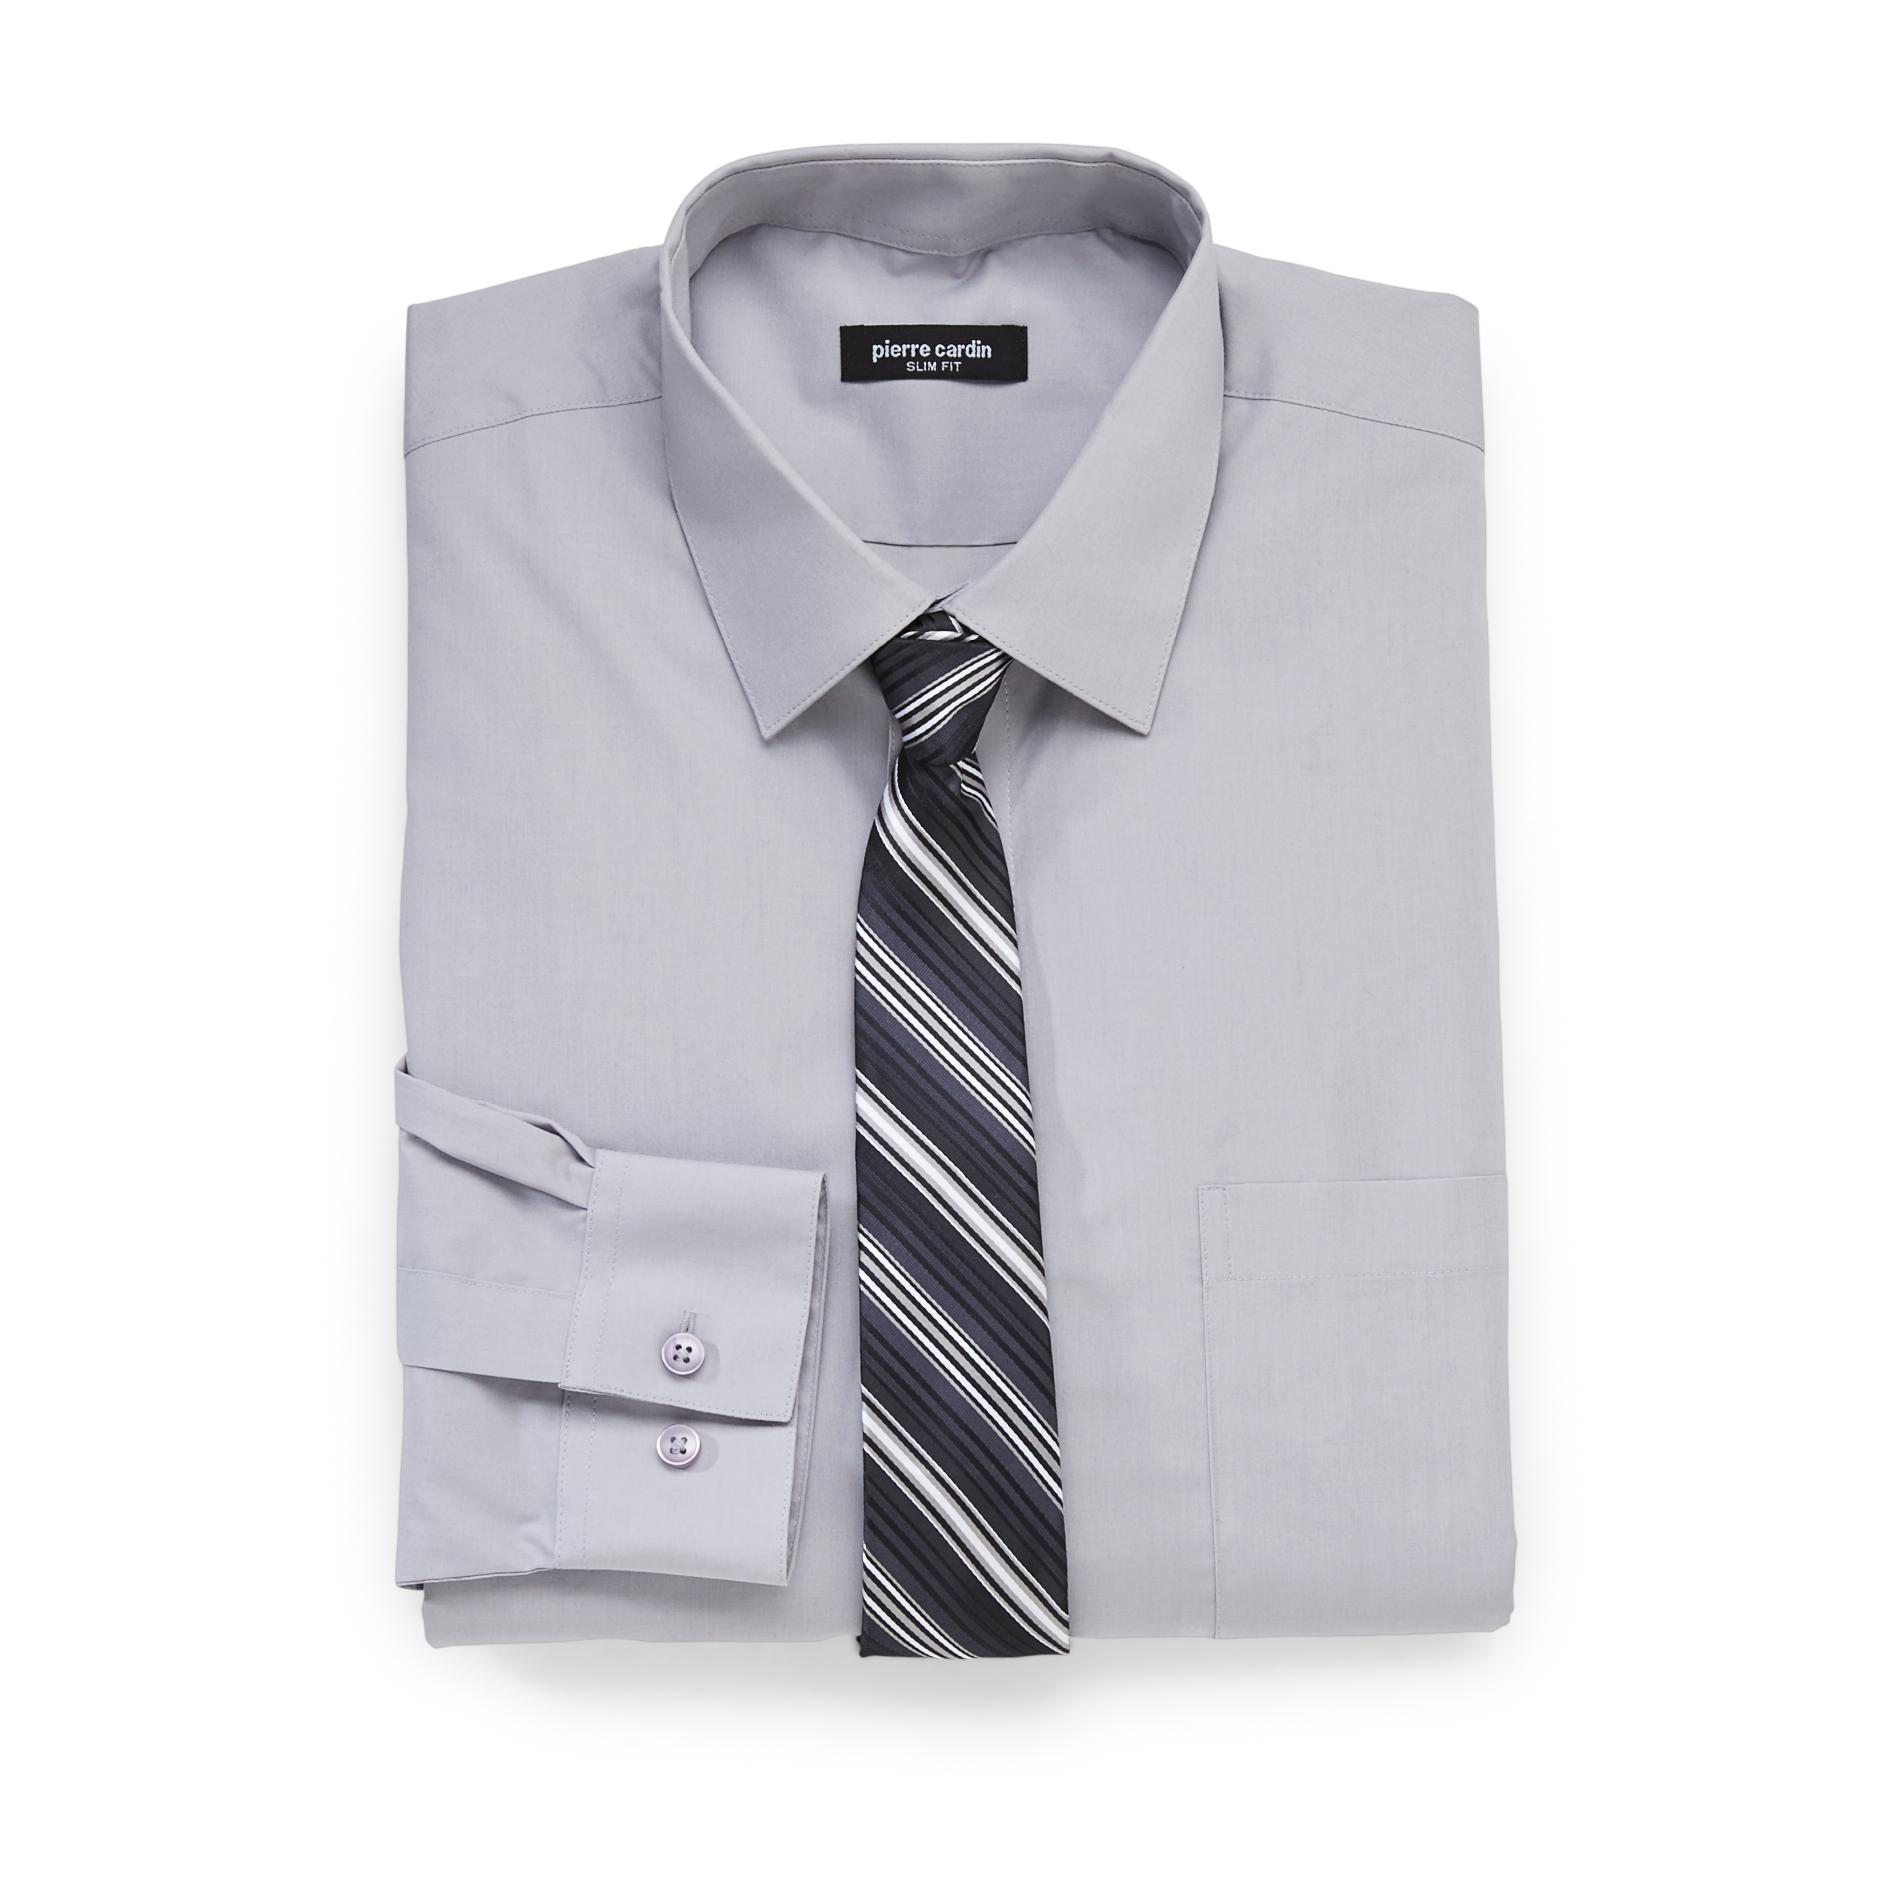 Pierre Cardin Men's Slim Fit Shirt & Tie - Striped